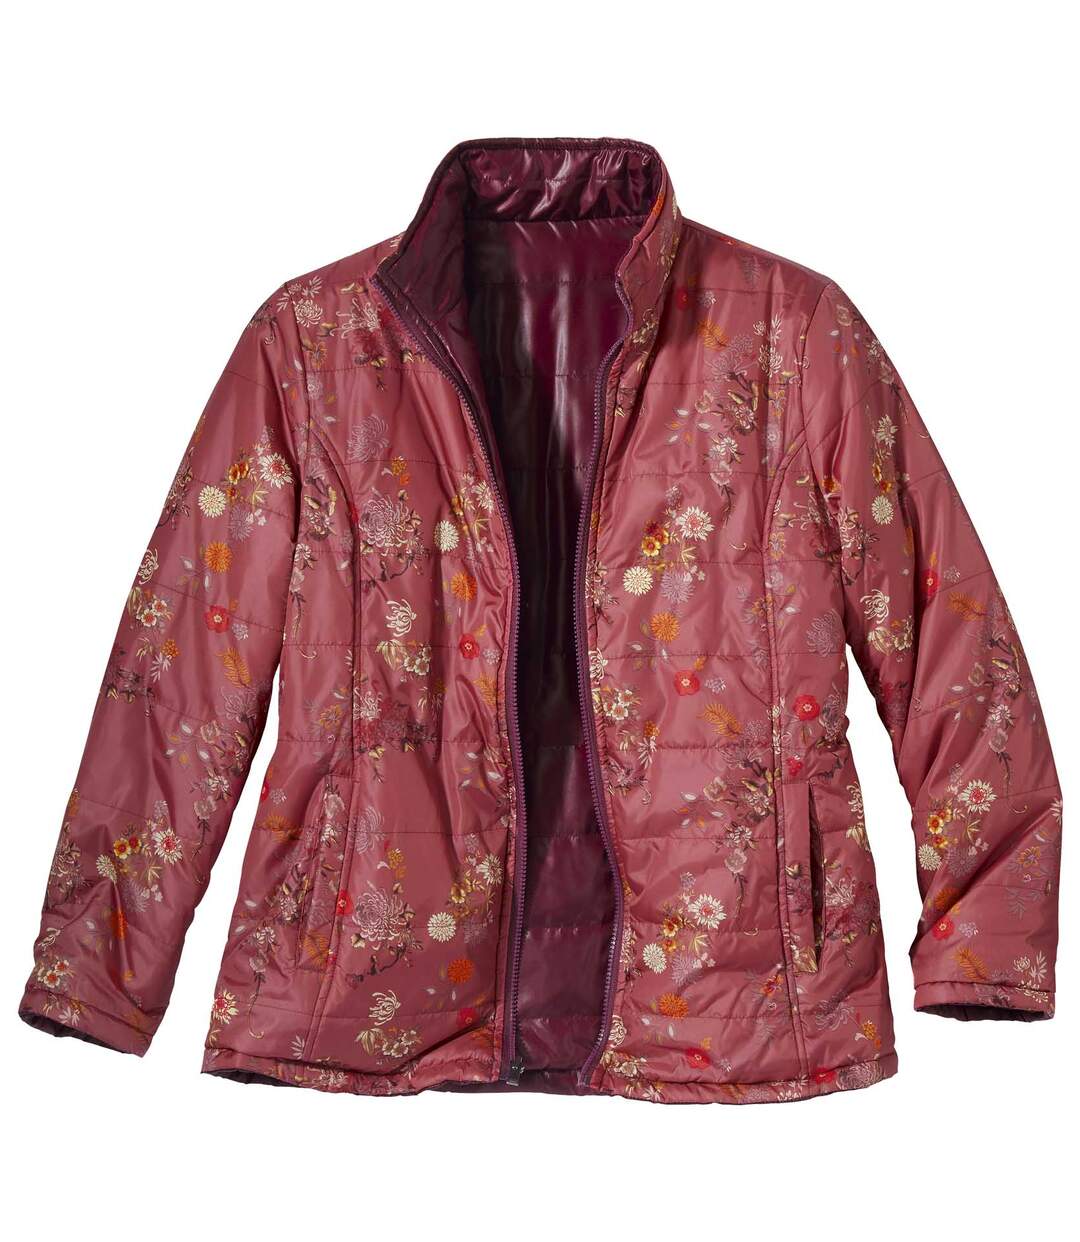 Women's Reversible 2-in-1 Padded Jacket - Burgundy Pink Atlas For Men